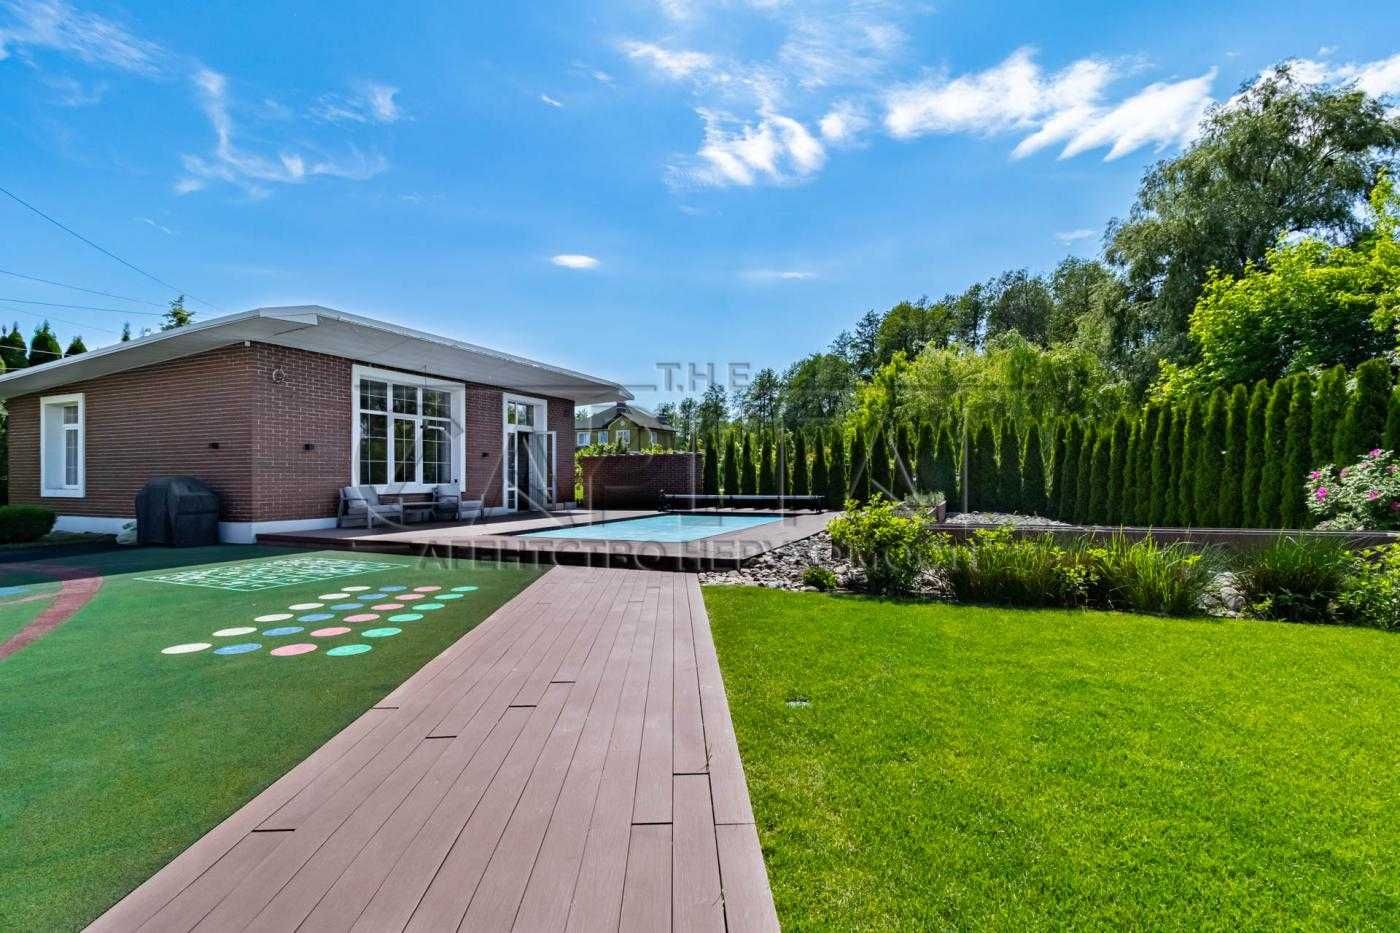 Продажа дома в КГ Green Hills 20 соток 350м2 + отдельно сауна бассейн